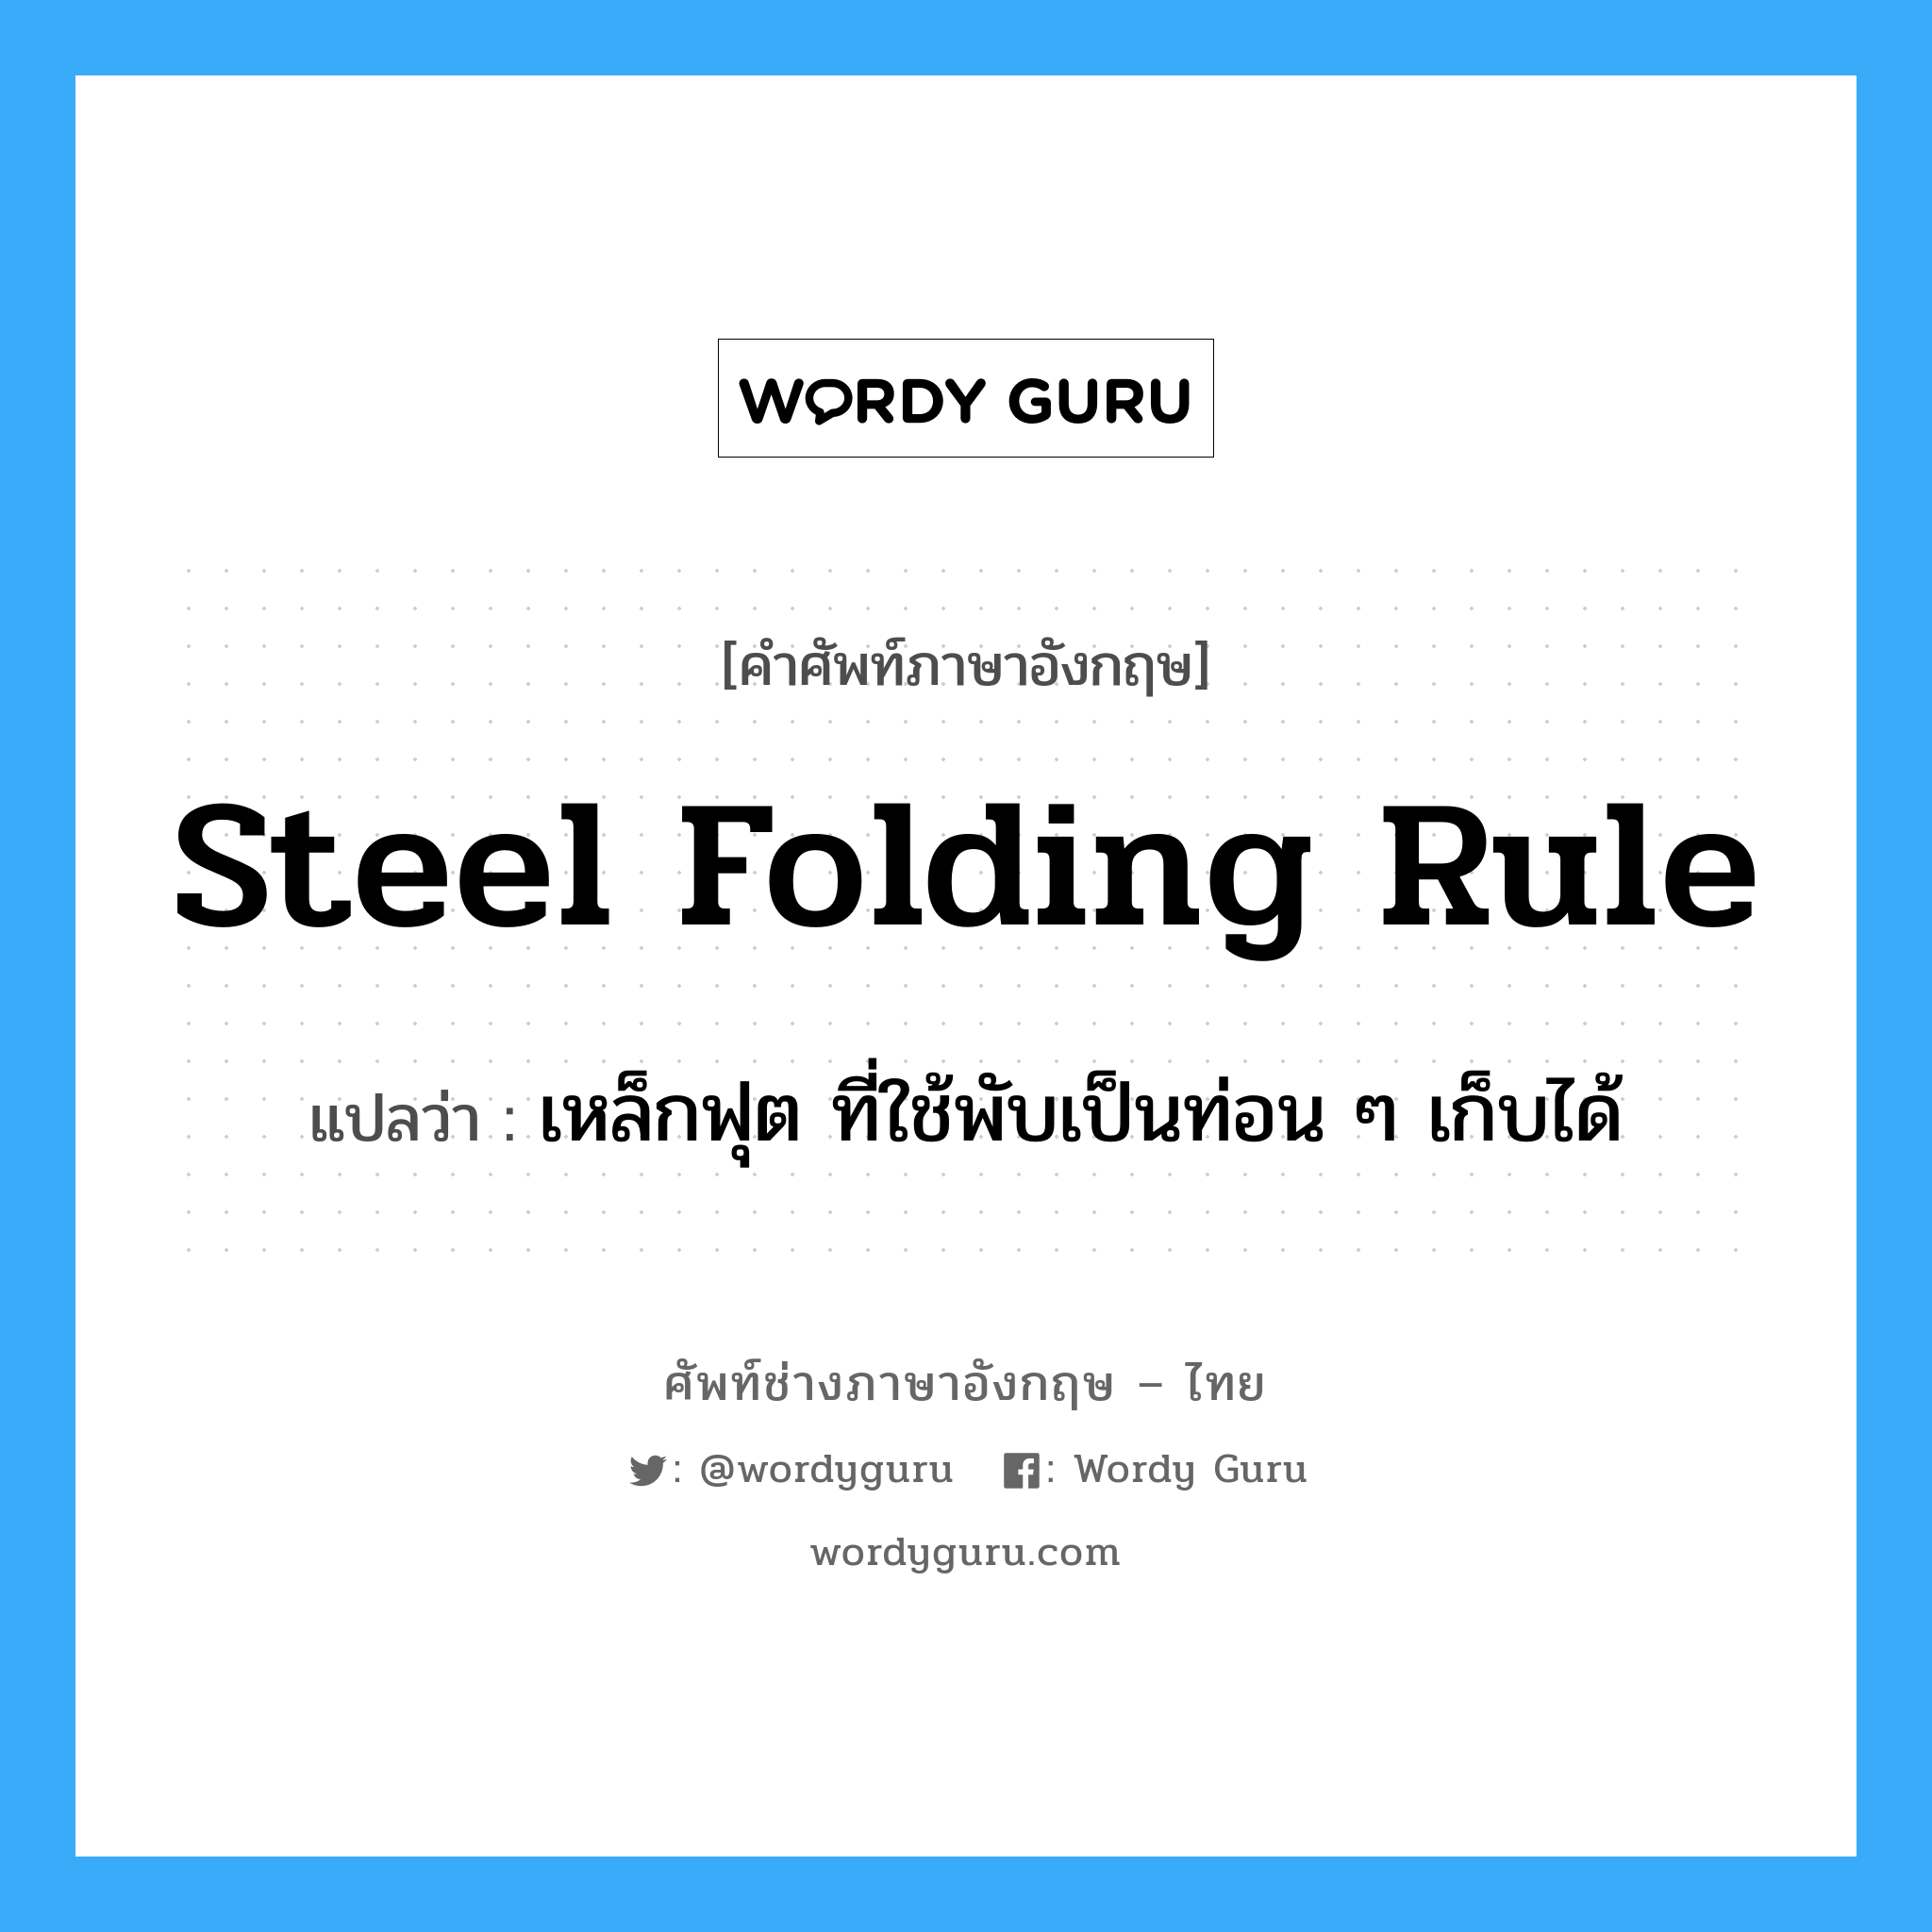 เหล็กฟุต ที่ใช้พับเป็นท่อน ๆ เก็บได้ ภาษาอังกฤษ?, คำศัพท์ช่างภาษาอังกฤษ - ไทย เหล็กฟุต ที่ใช้พับเป็นท่อน ๆ เก็บได้ คำศัพท์ภาษาอังกฤษ เหล็กฟุต ที่ใช้พับเป็นท่อน ๆ เก็บได้ แปลว่า steel folding rule